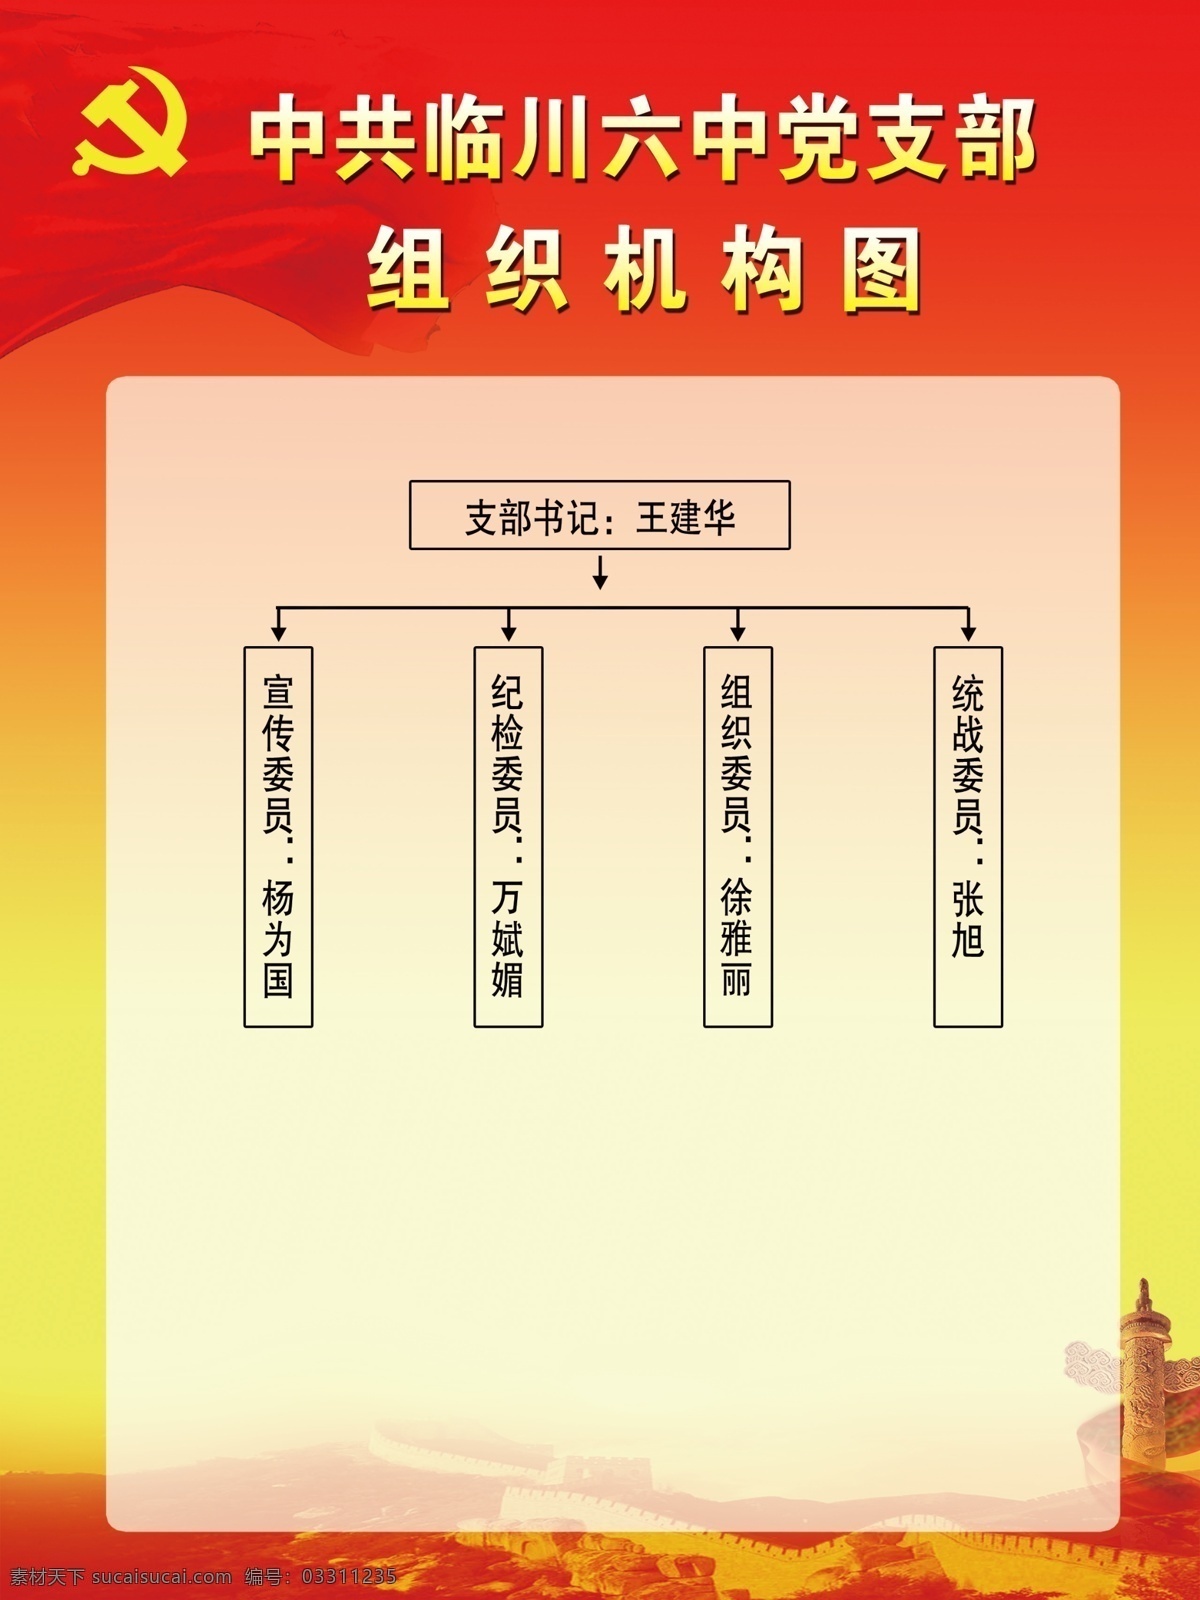 中共 临川 六中 党支部 组织机构 图 临川六中 组织 机构图